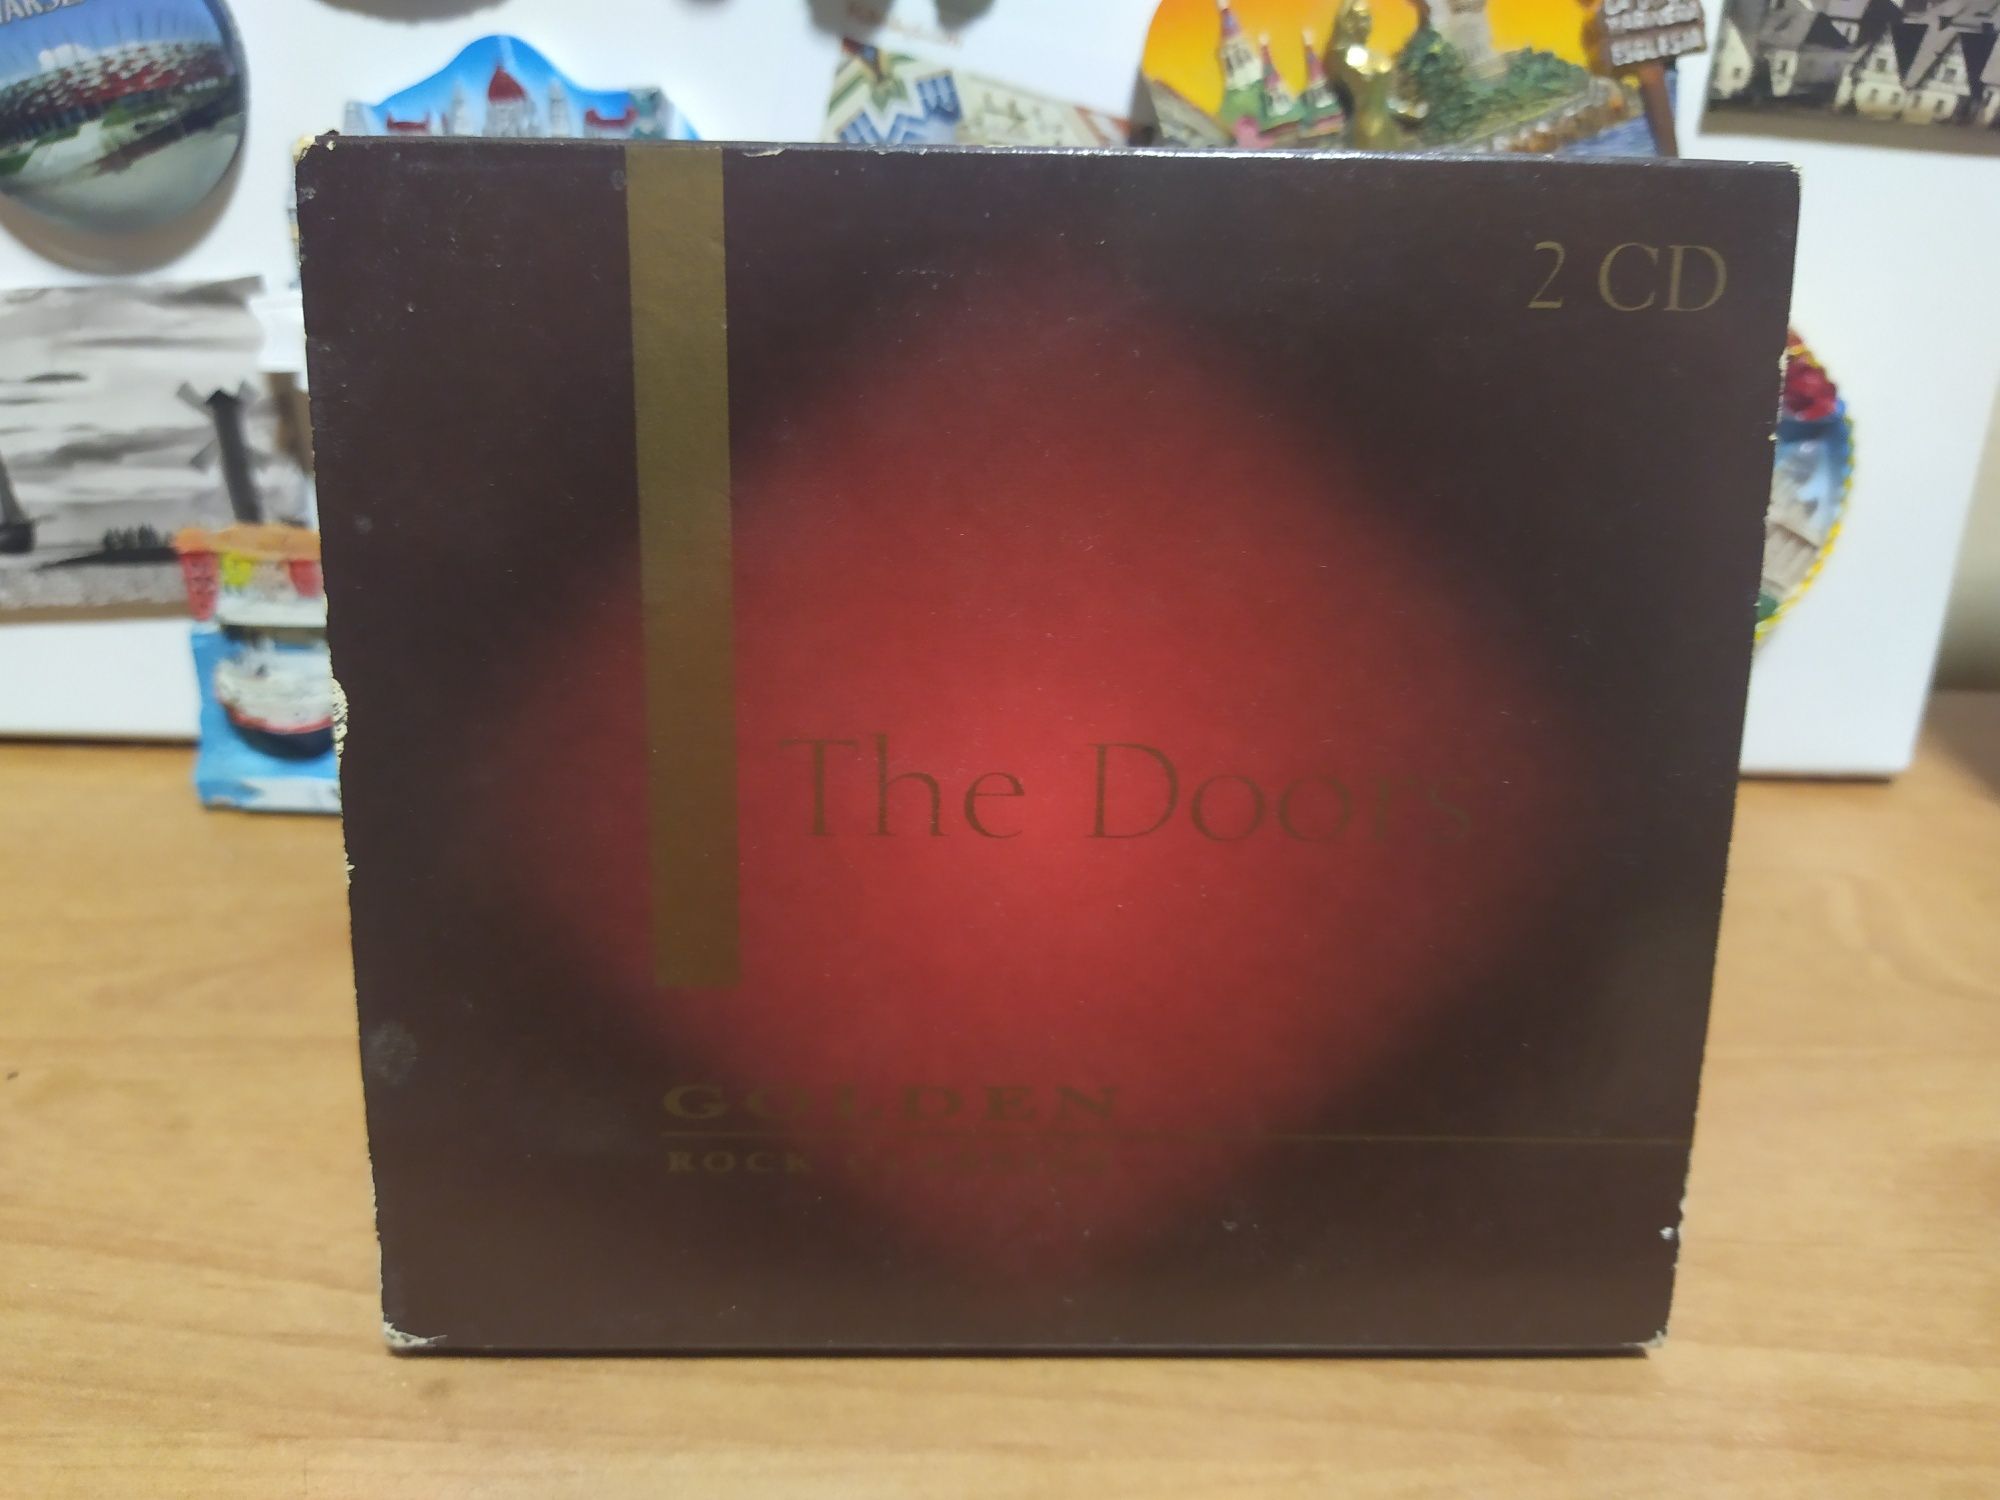 The Doors golden rock classics 2 CD